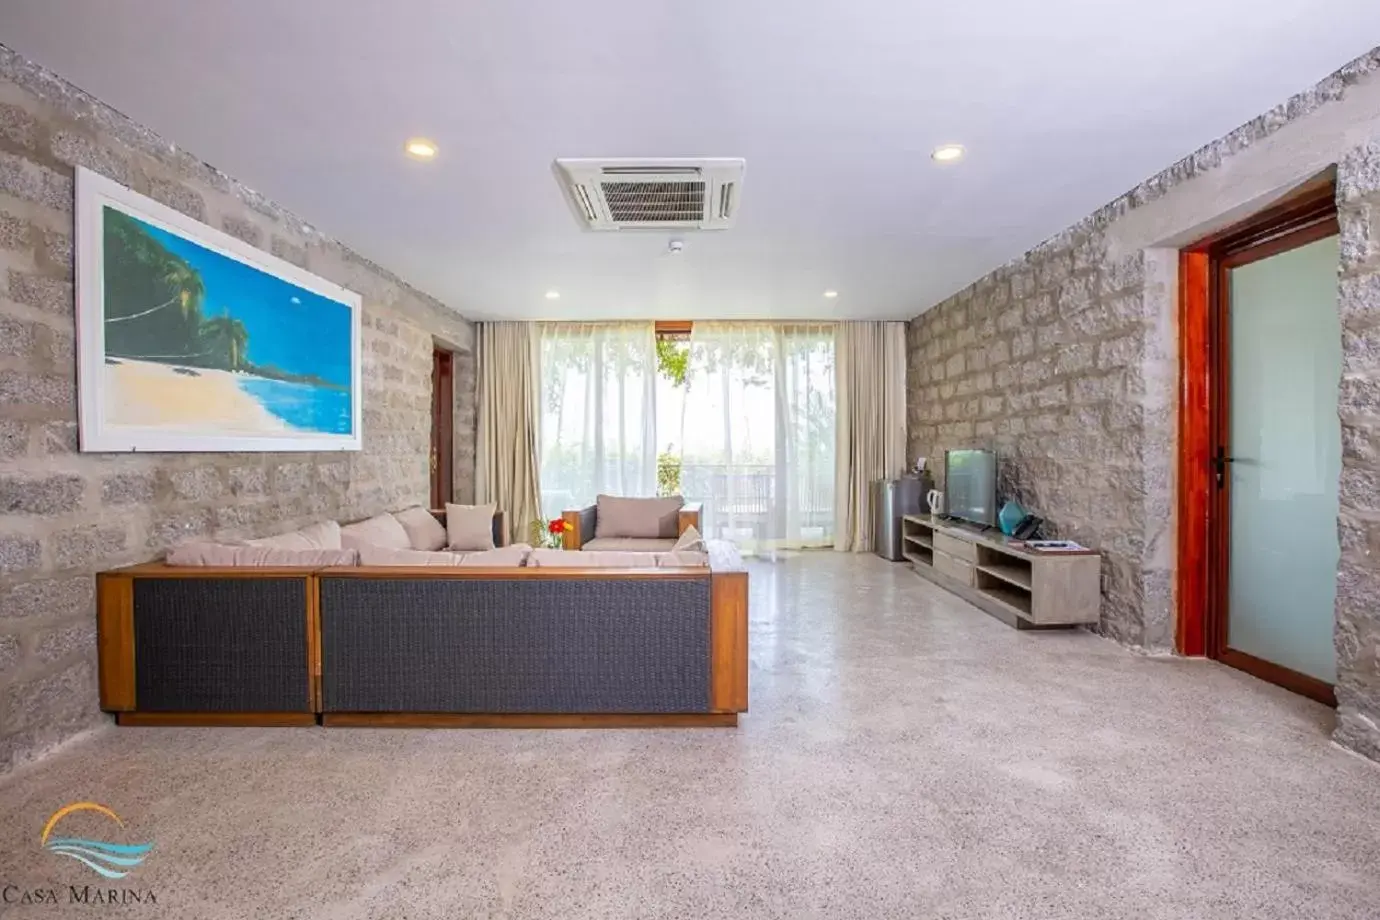 Living room, Lobby/Reception in Casa Marina Resort